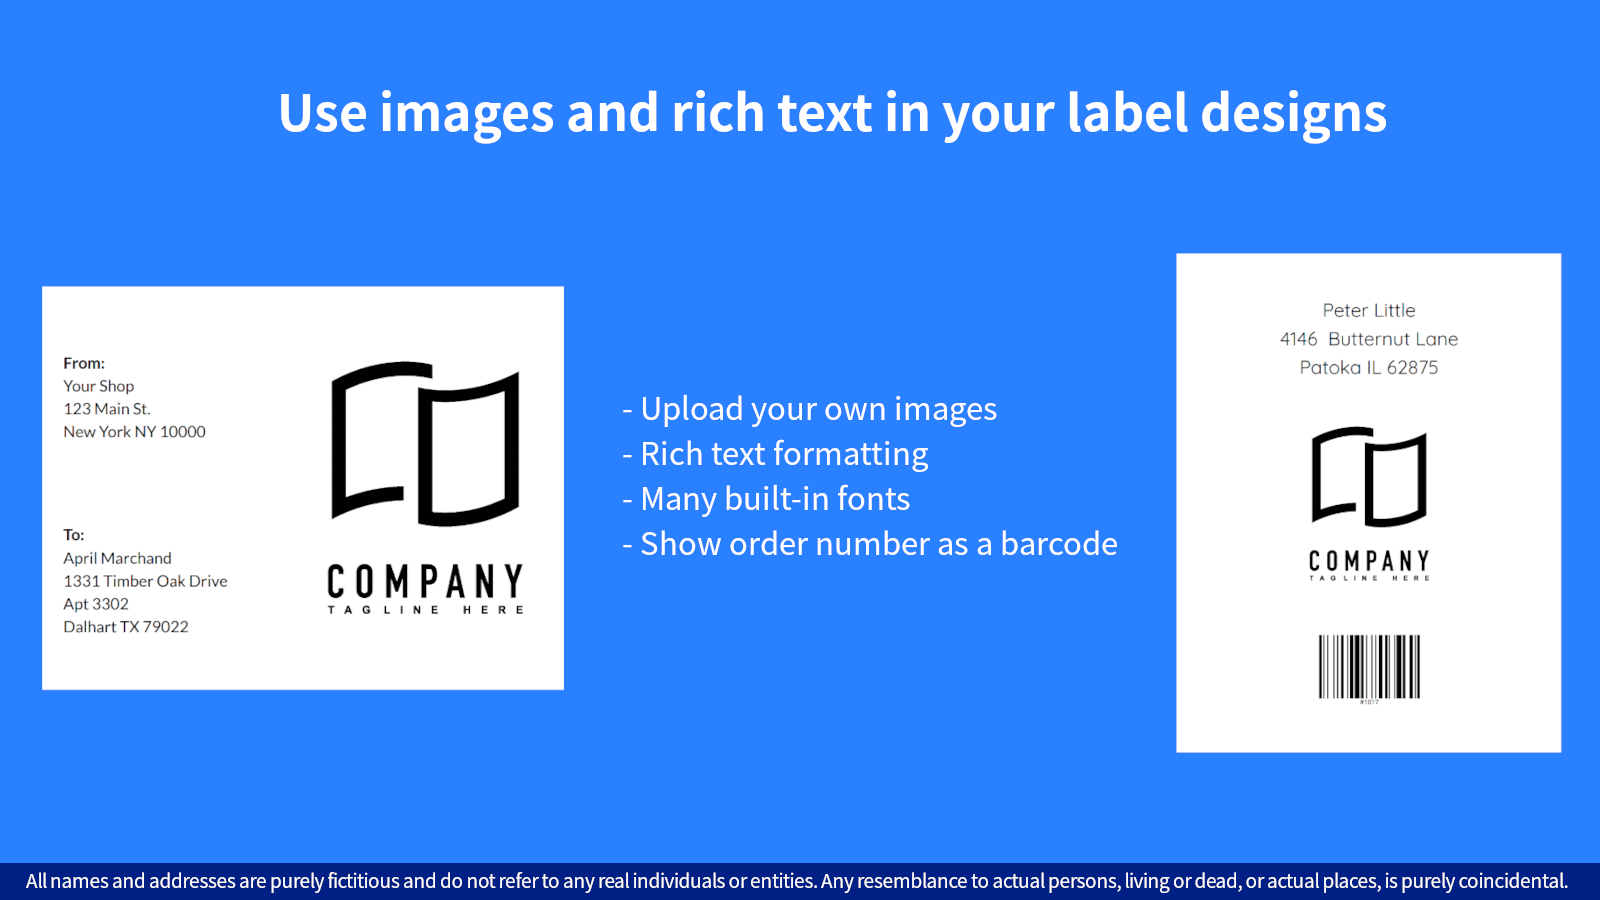 Brug billeder og rig tekst i dine etiketdesigns